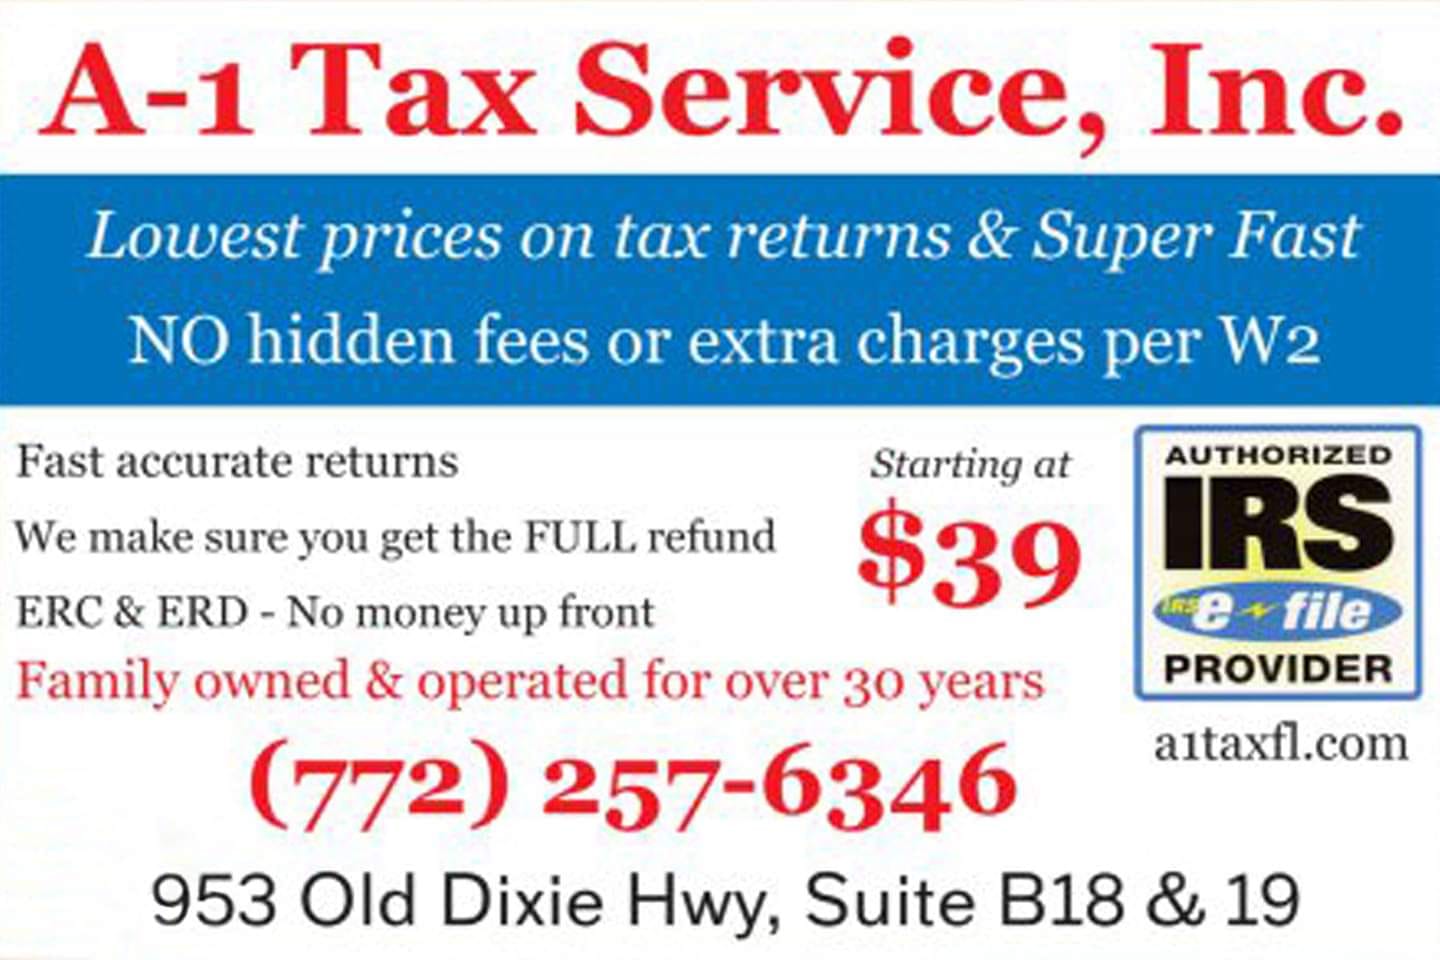 A-1 Tax Service, Inc.